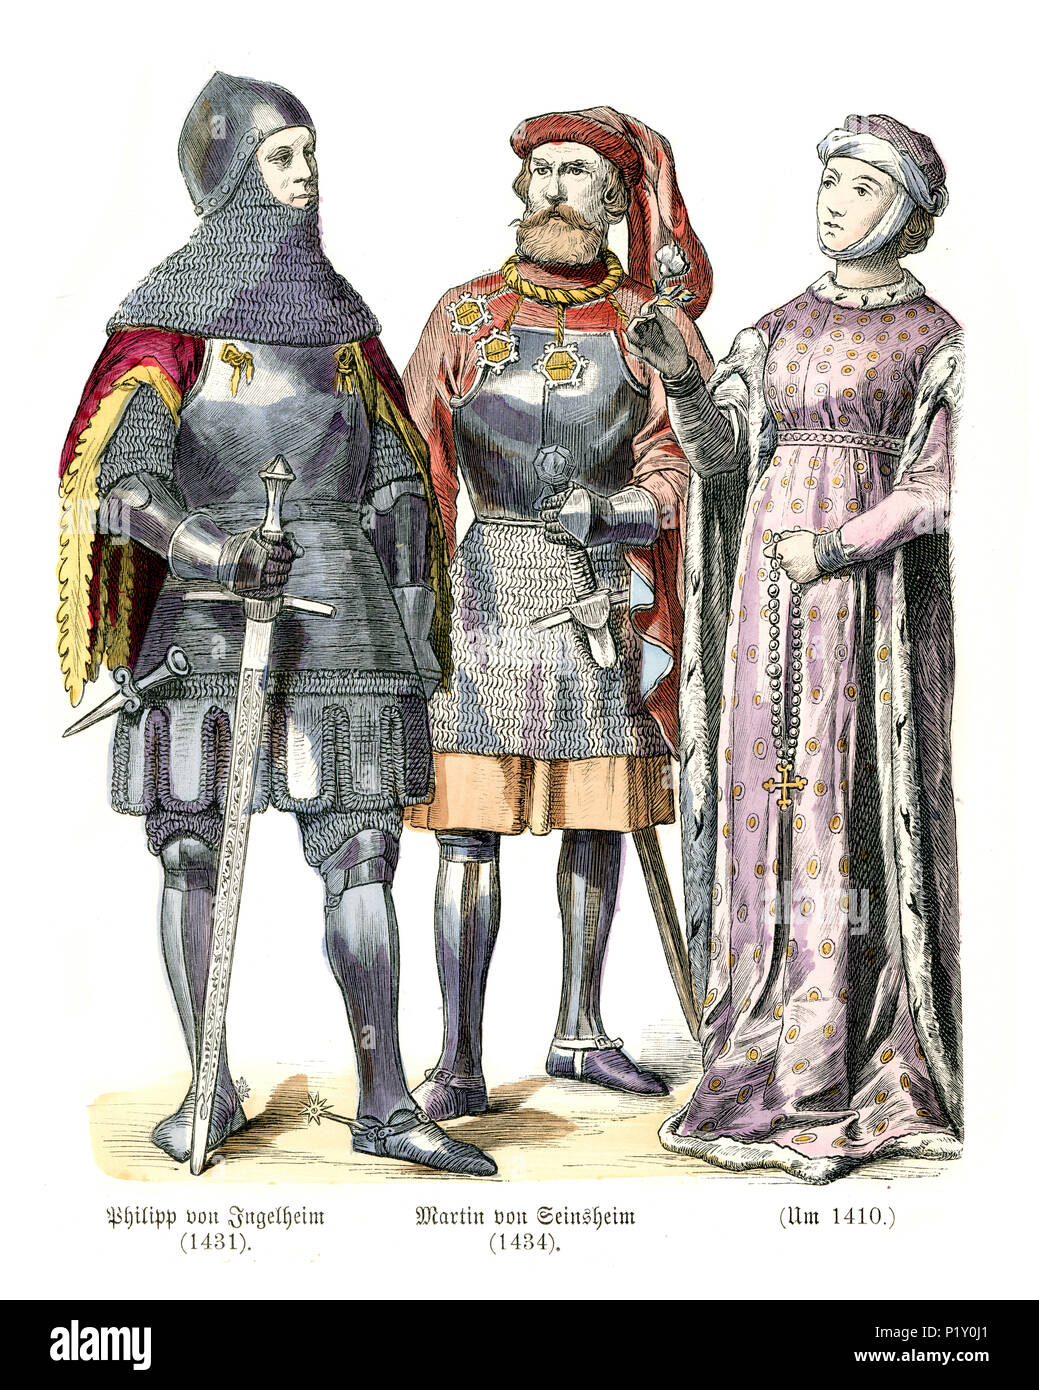 Vintage engraving of History of Fashion, Medieval knights and lady, German, 15th Century. Philipp von Ingelheim, a german knight, Martin von Seinsheim Stock Photo